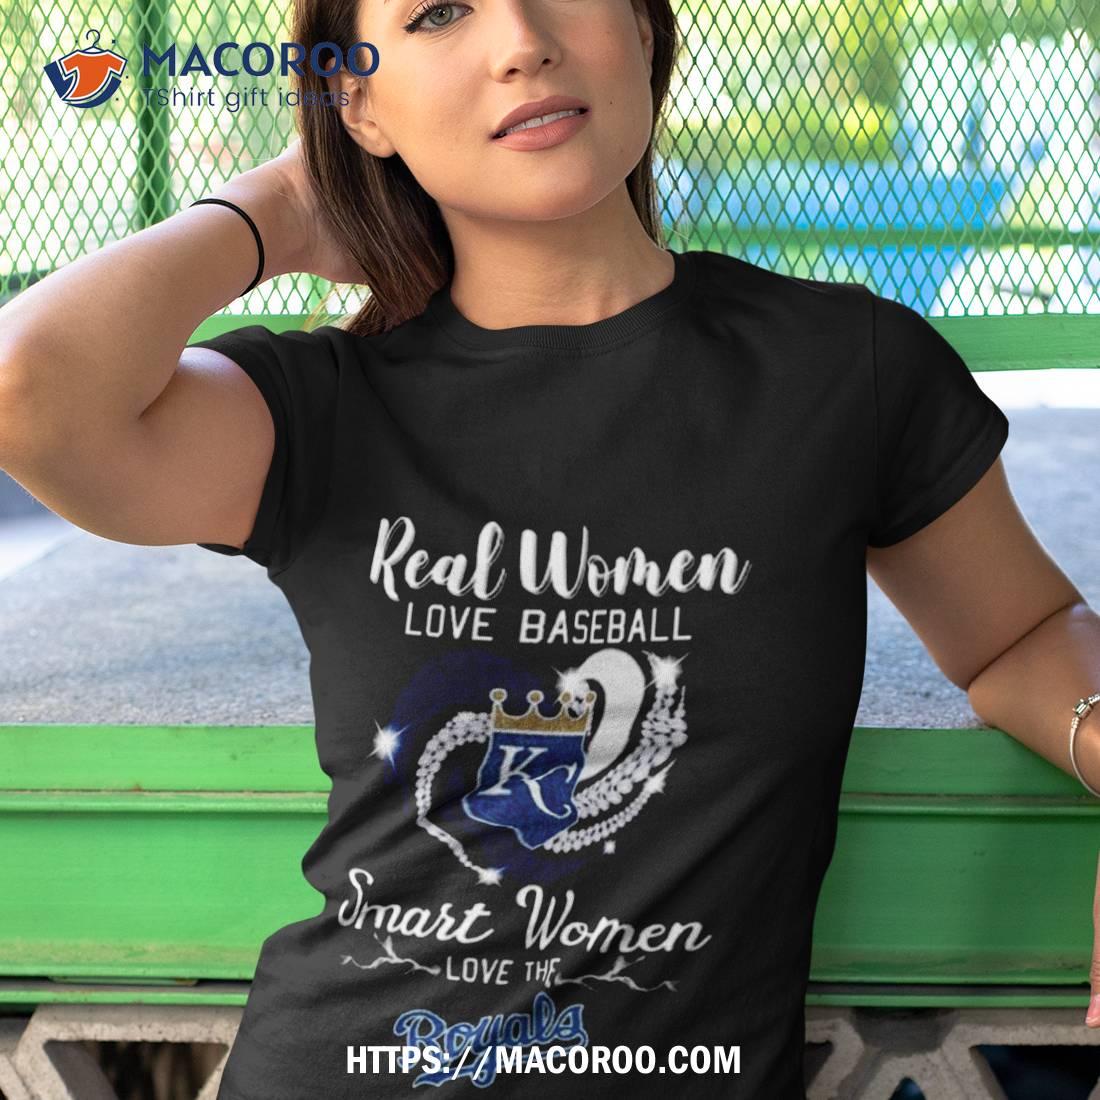 Real Women Love Baseball Smart Women Love The Kansas City Royals Hot T-Shirt